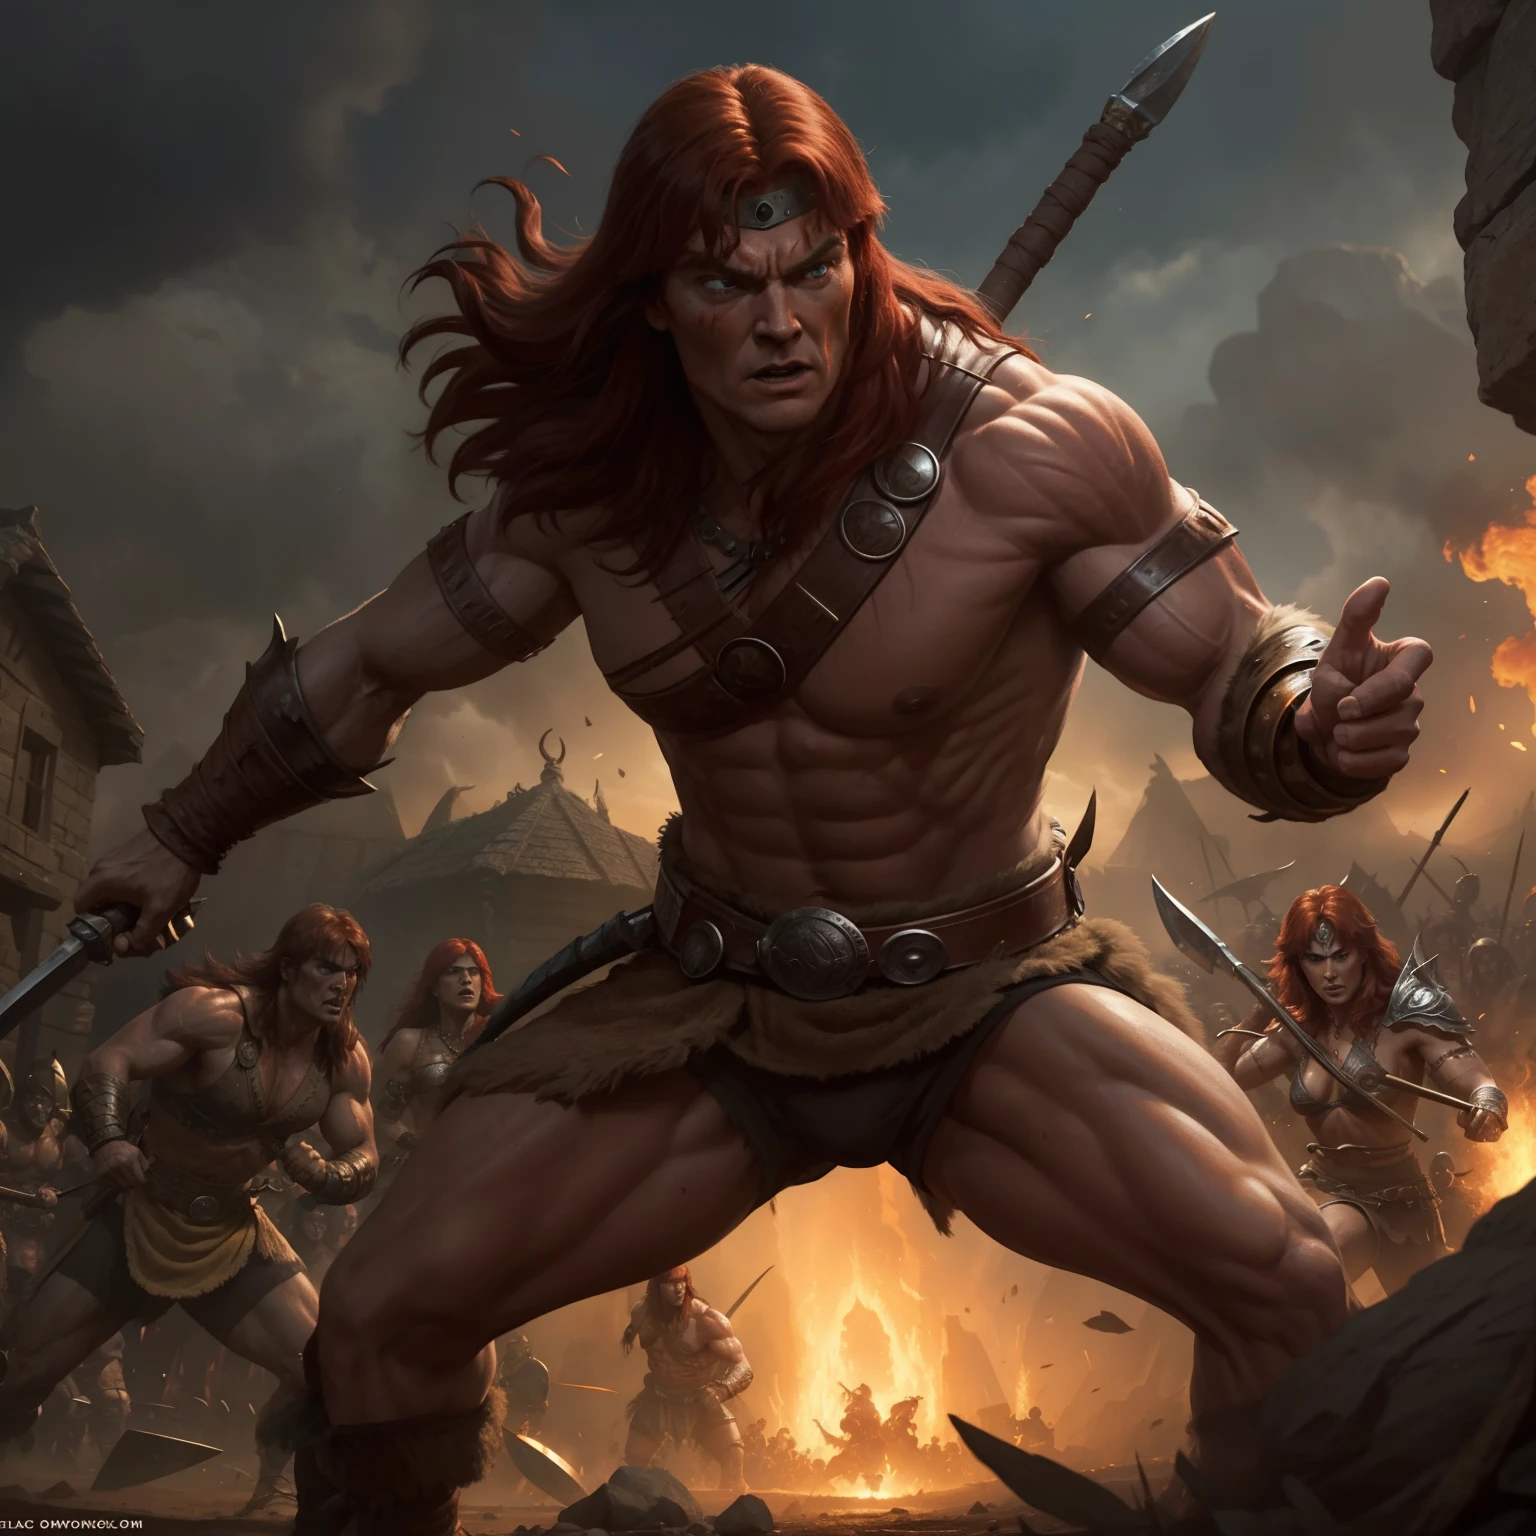 Conan et Red Sonja dans un village cimmérien dans une scène de bataille épique, avec l’apparition de personnages inspirés de la bande dessinée.